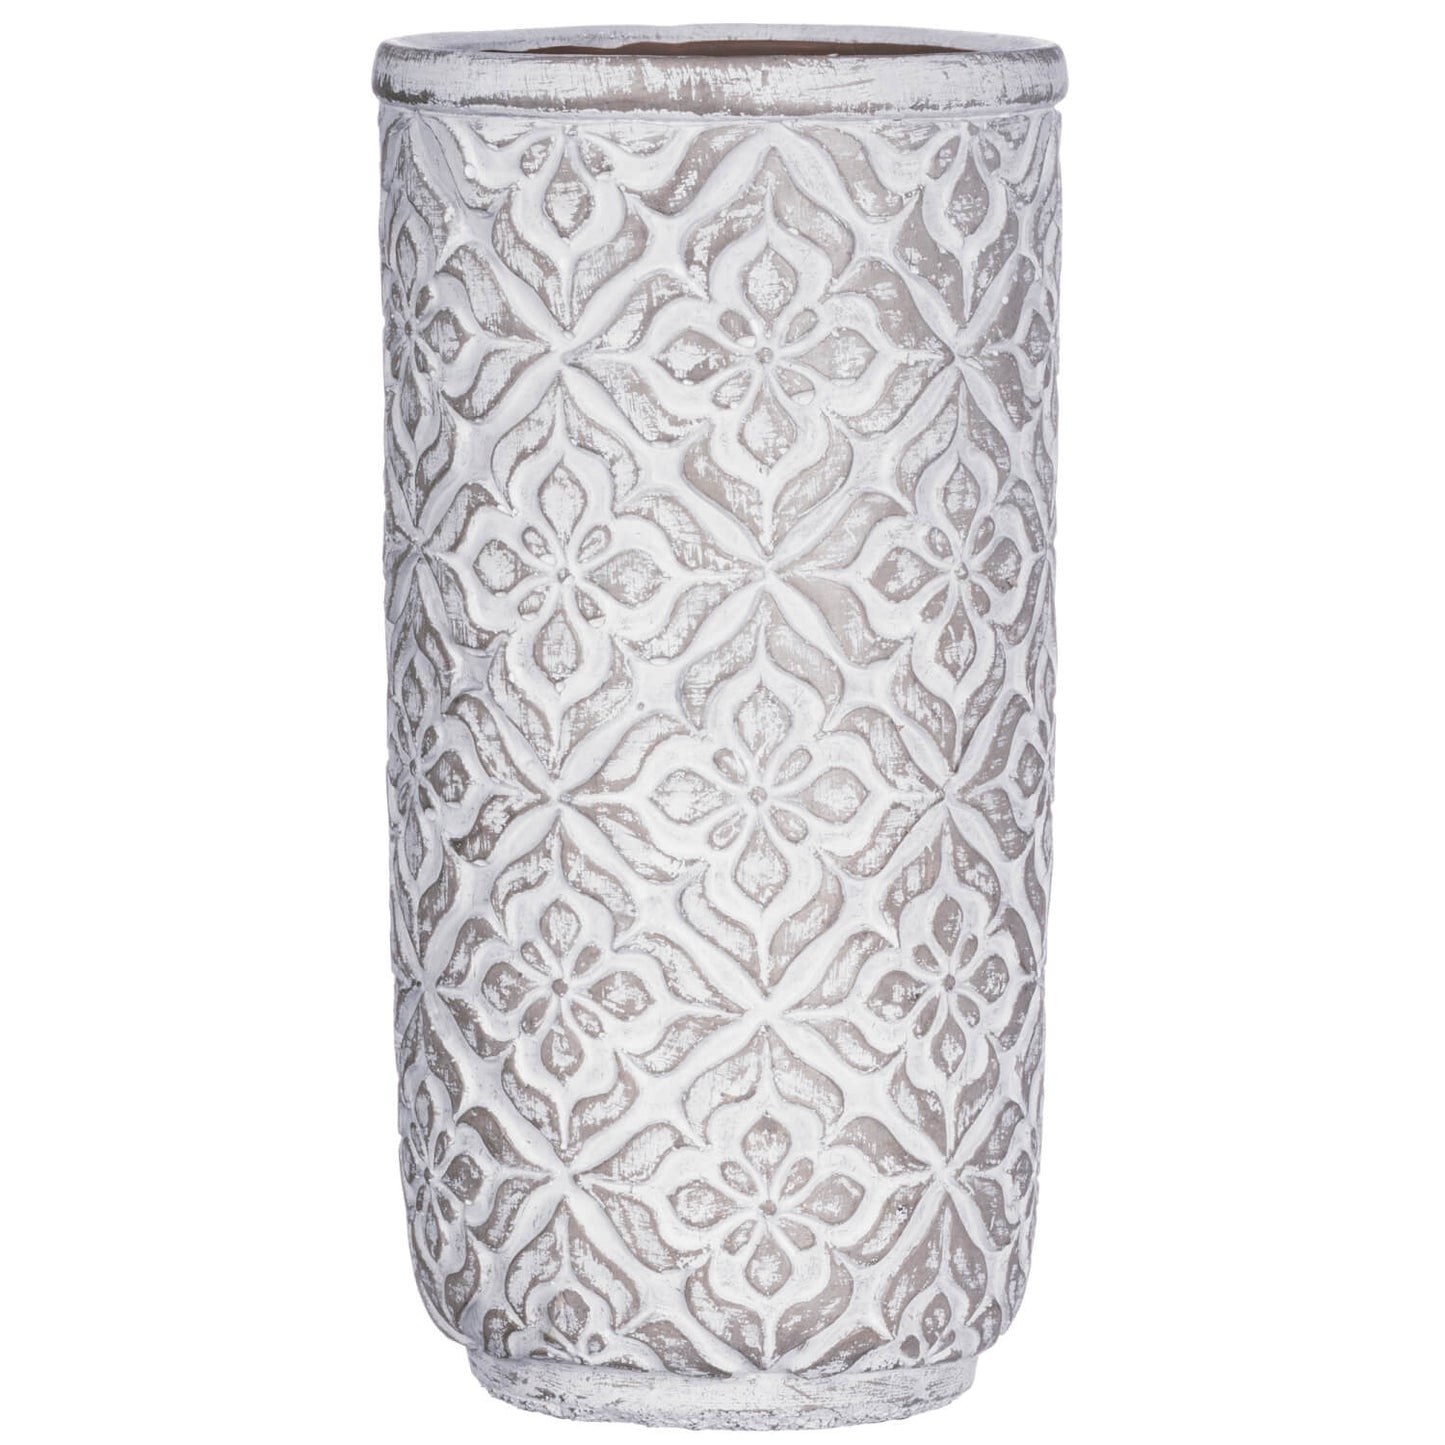 Patterned Pottery Vase